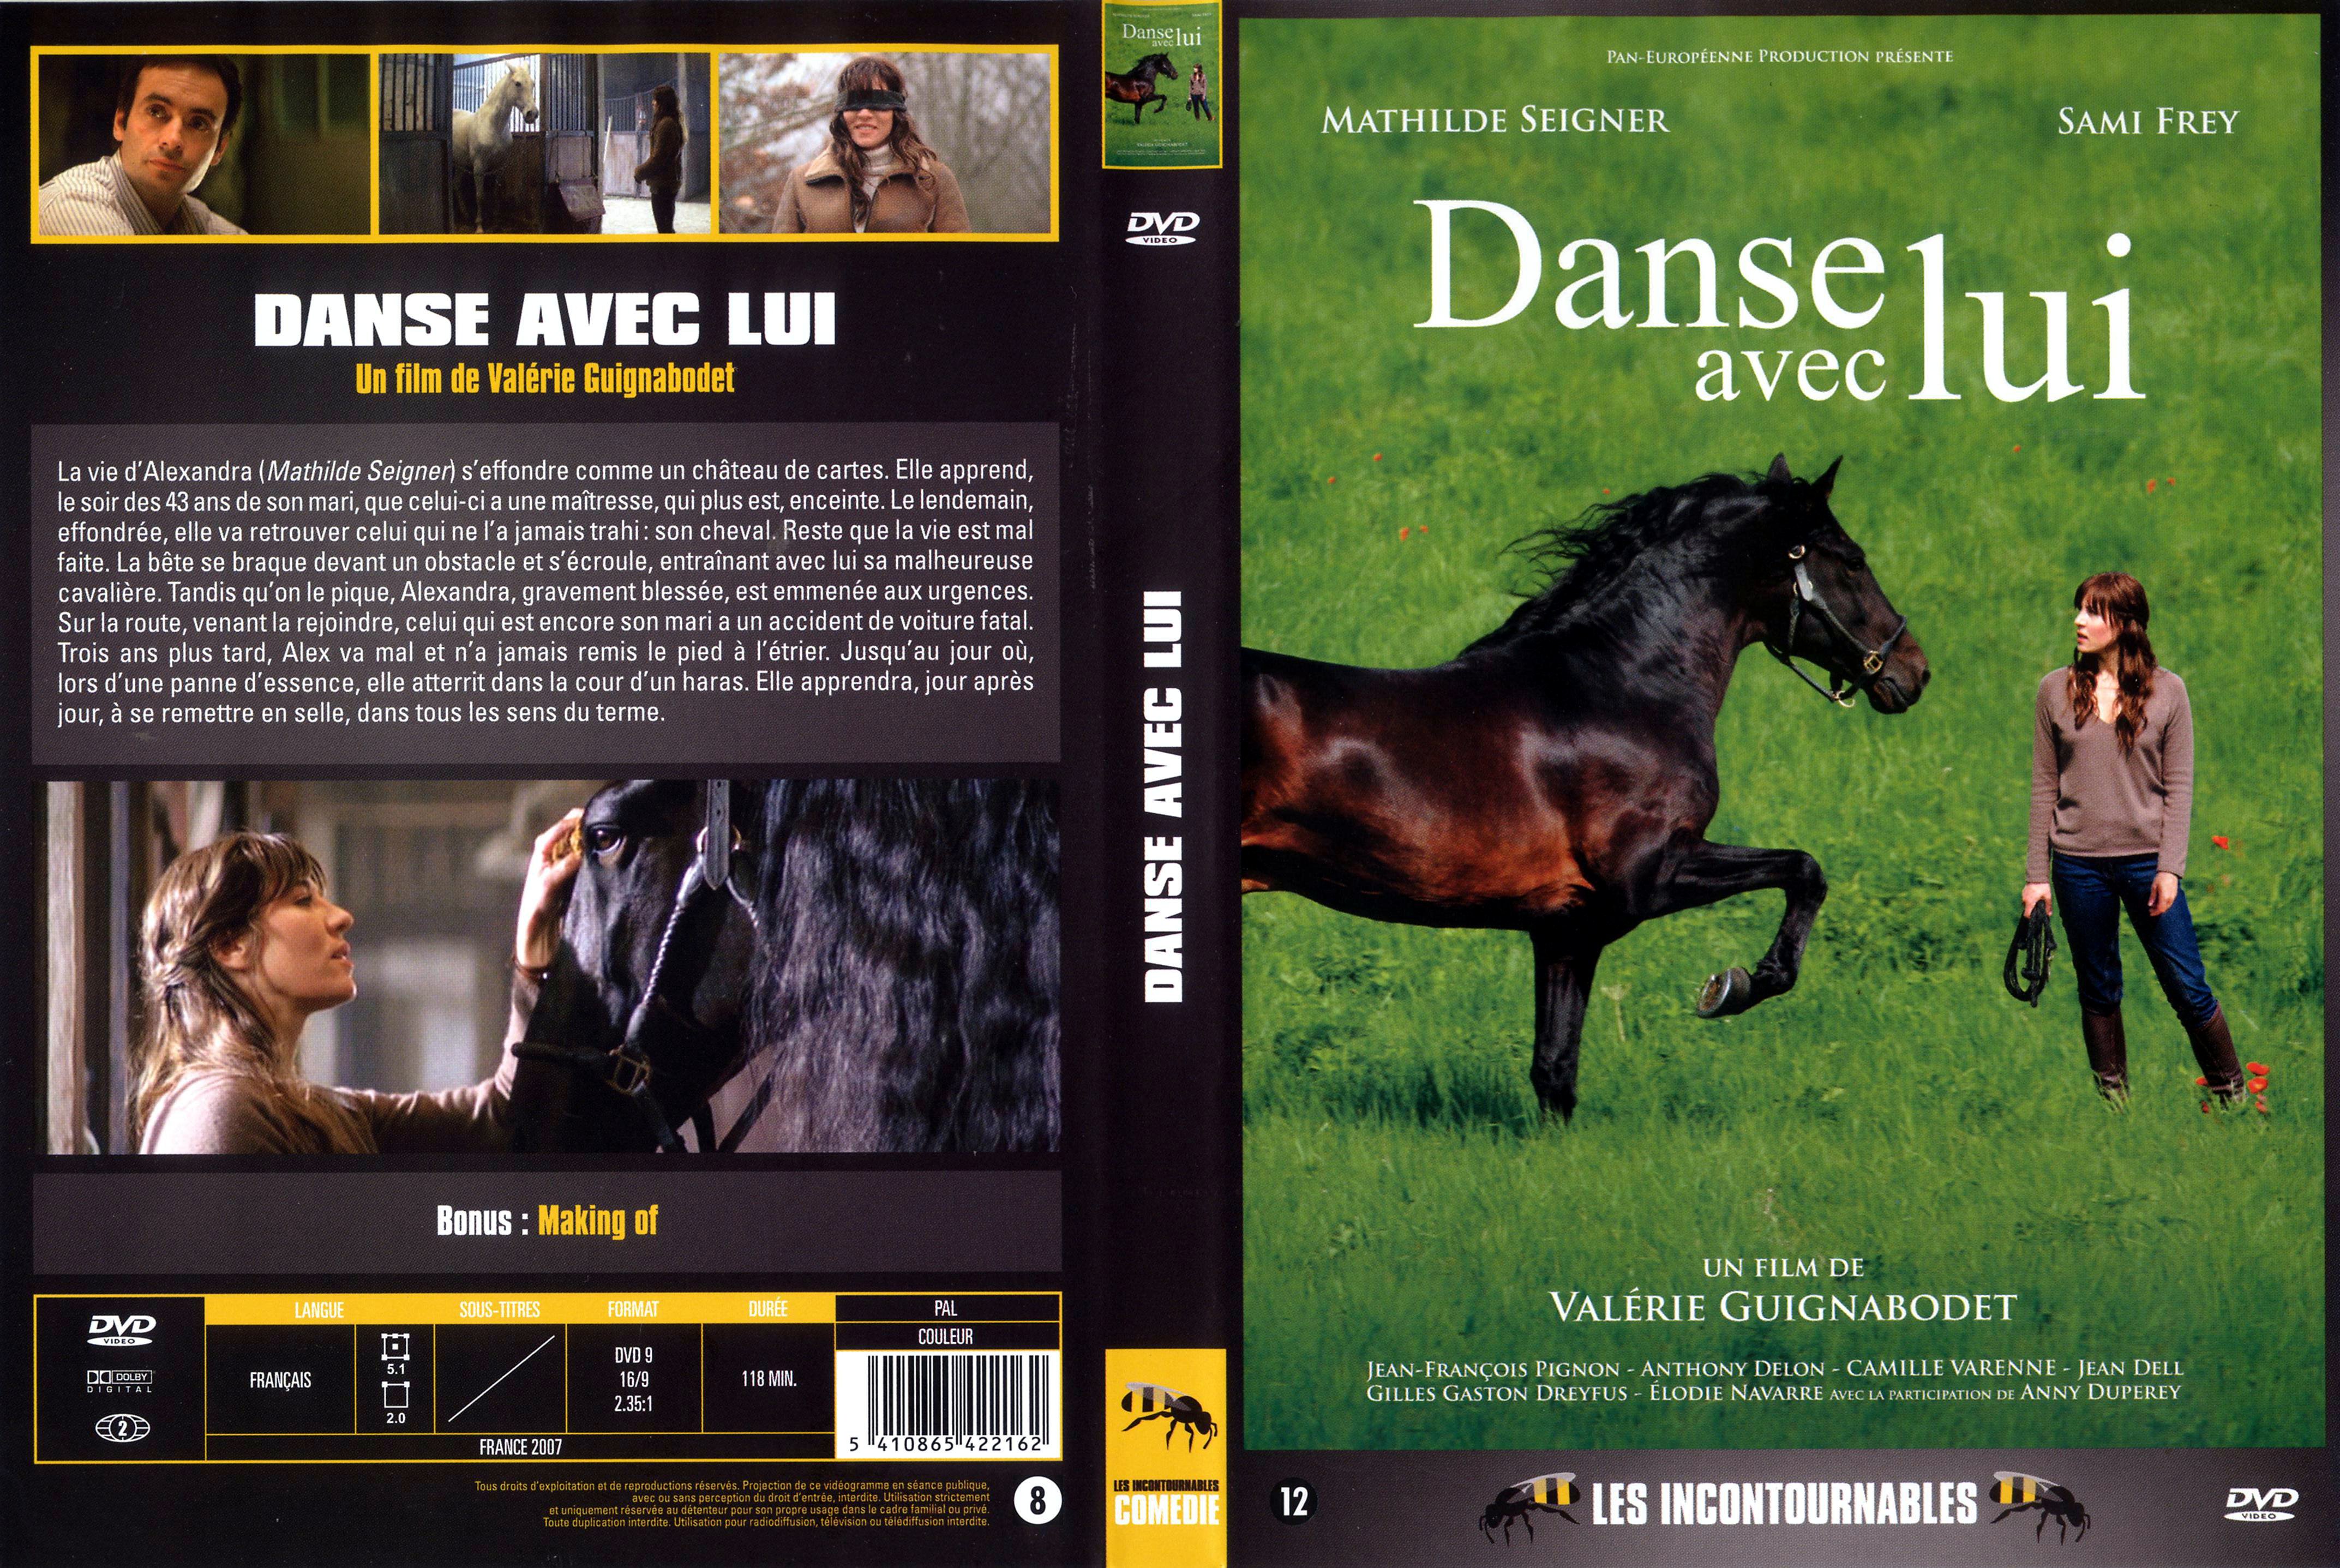 Jaquette DVD de Danse avec les loups v2 - Cinéma Passion